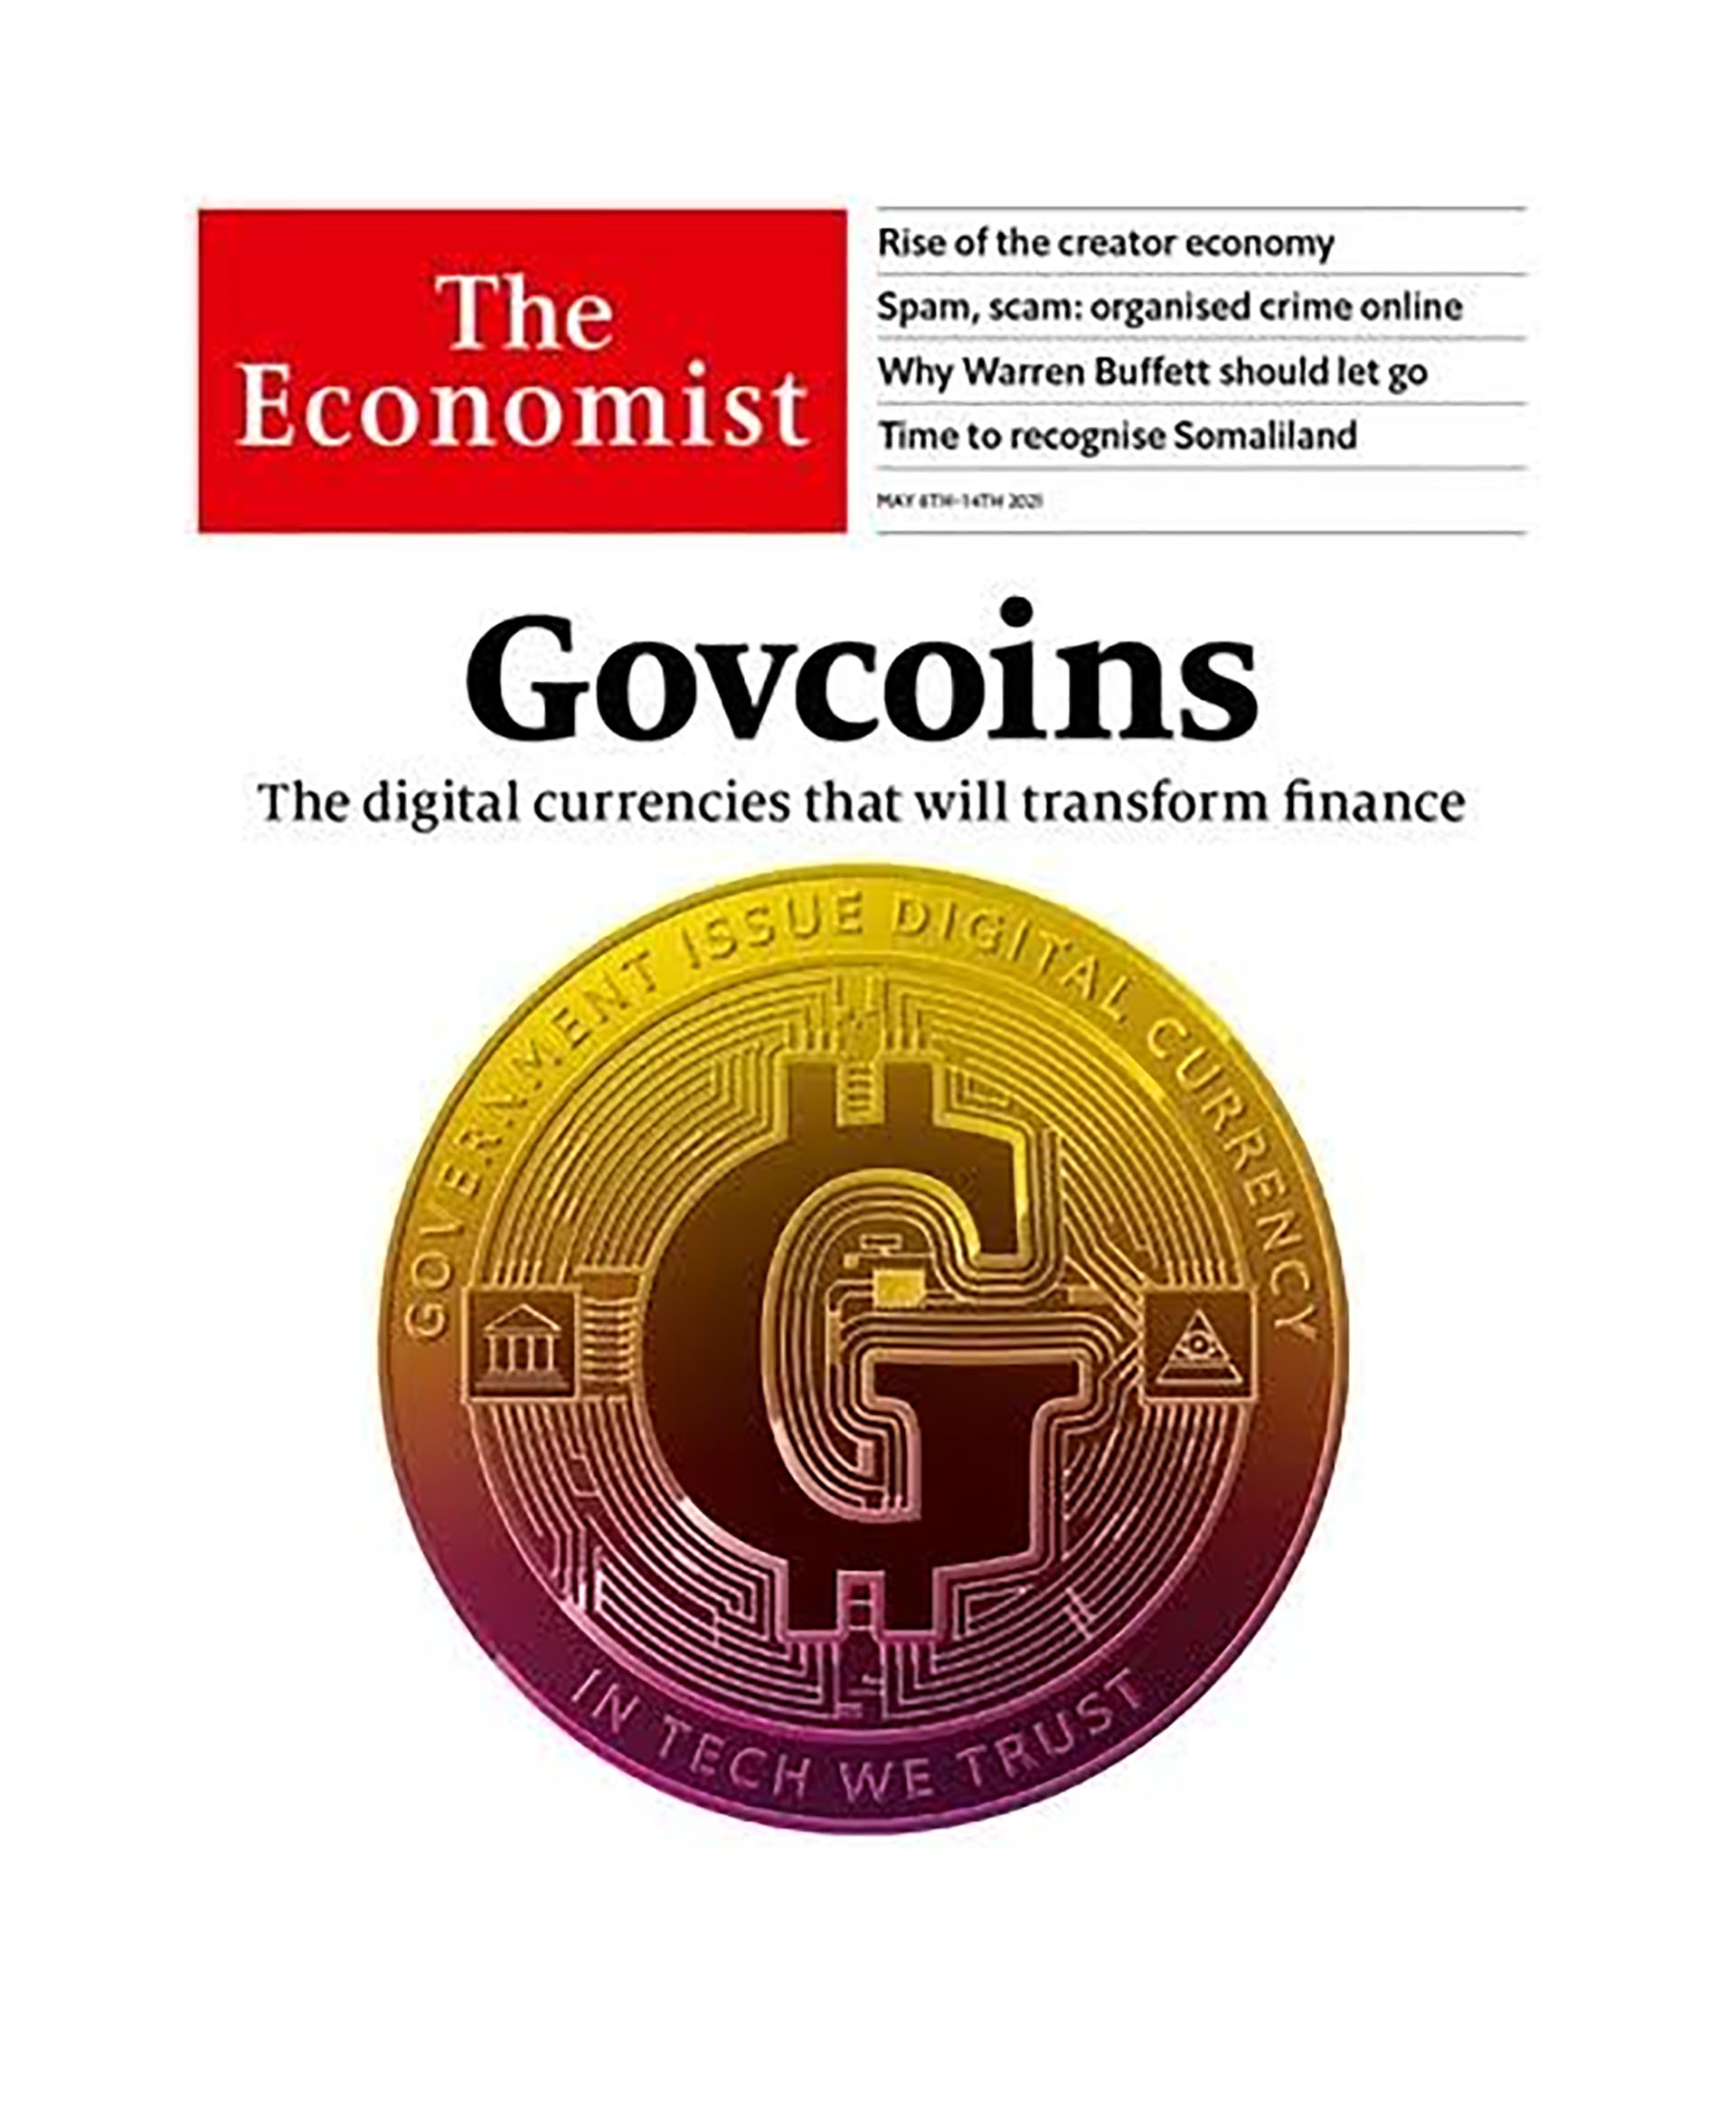 La tapa de The Economist de esta semana